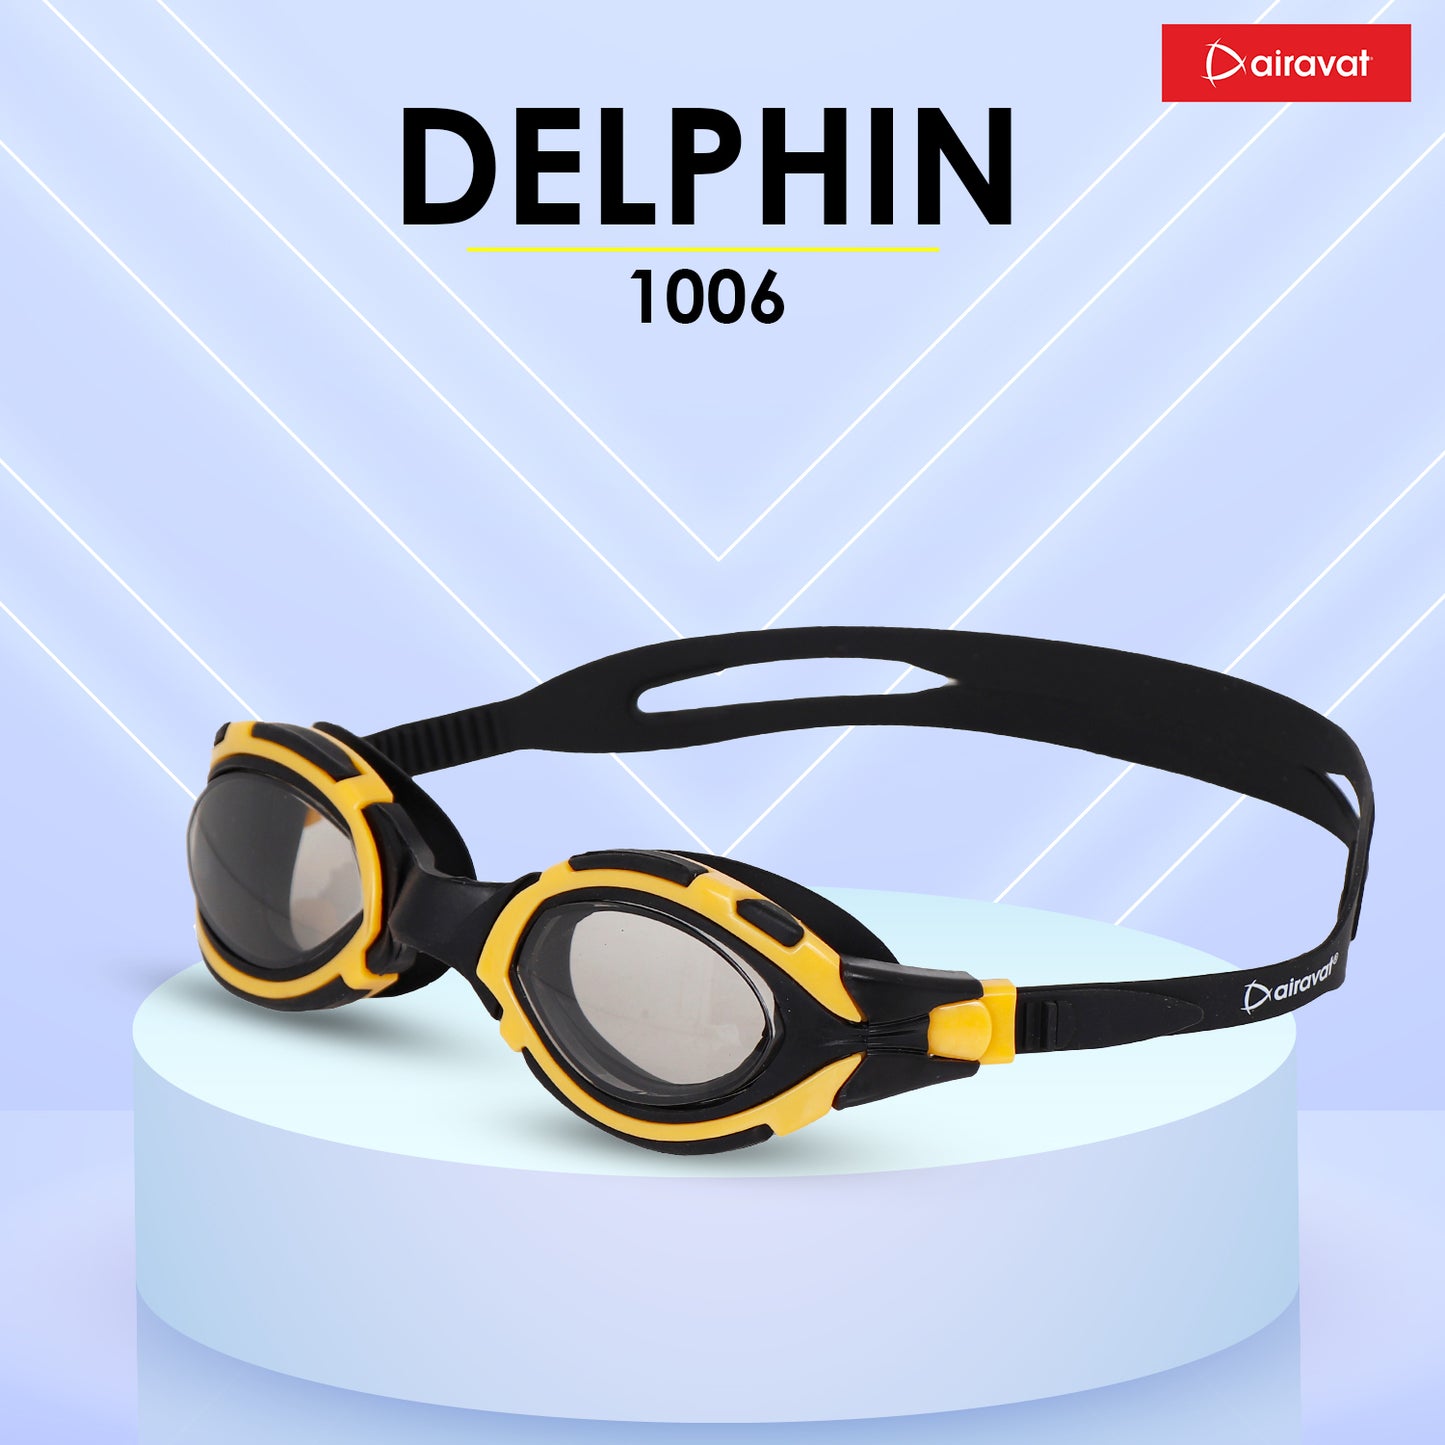 DELPHIN 1006